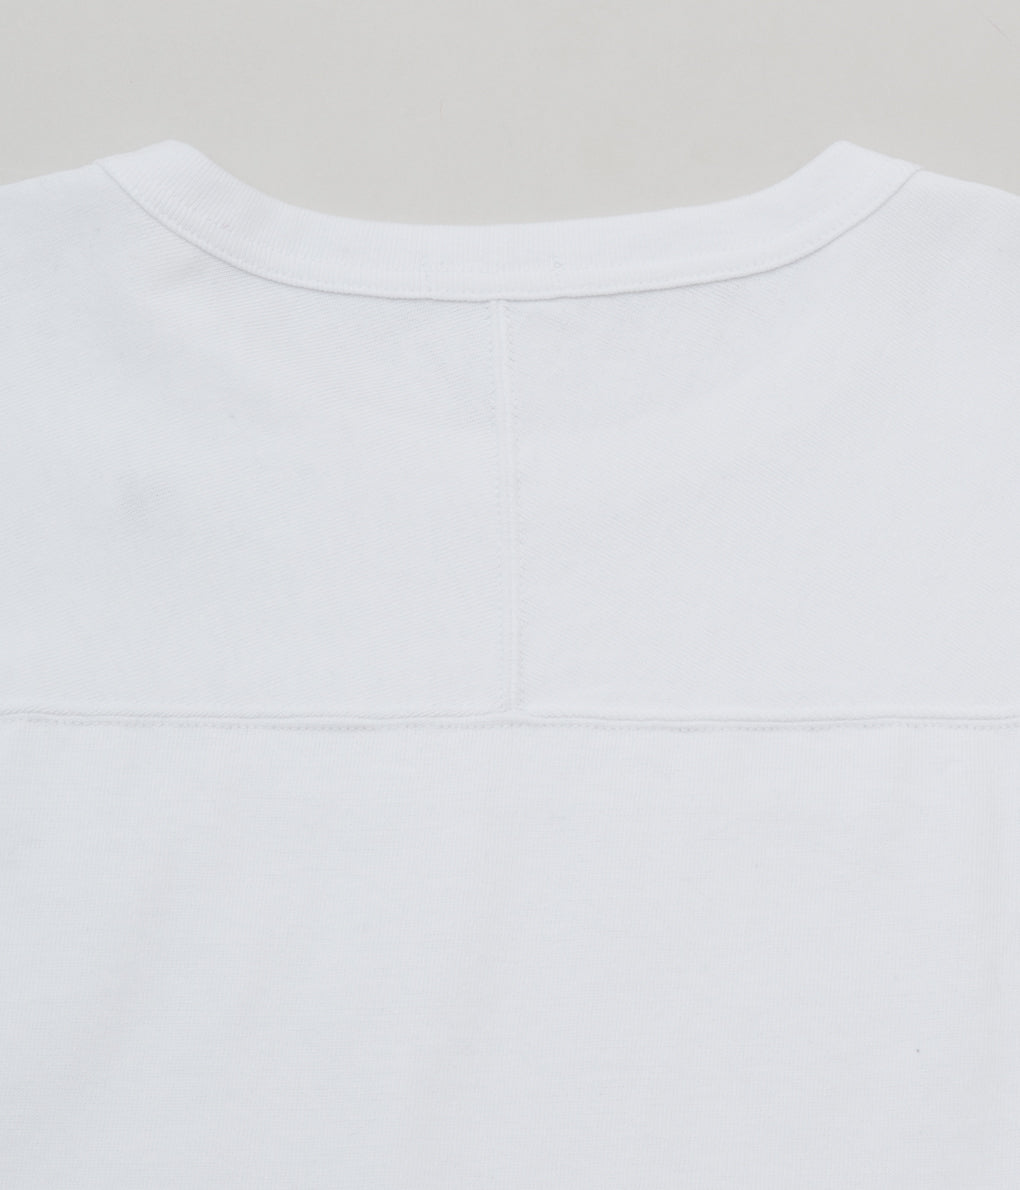 COMOLI  "フットボールTシャツ"(WHITE)